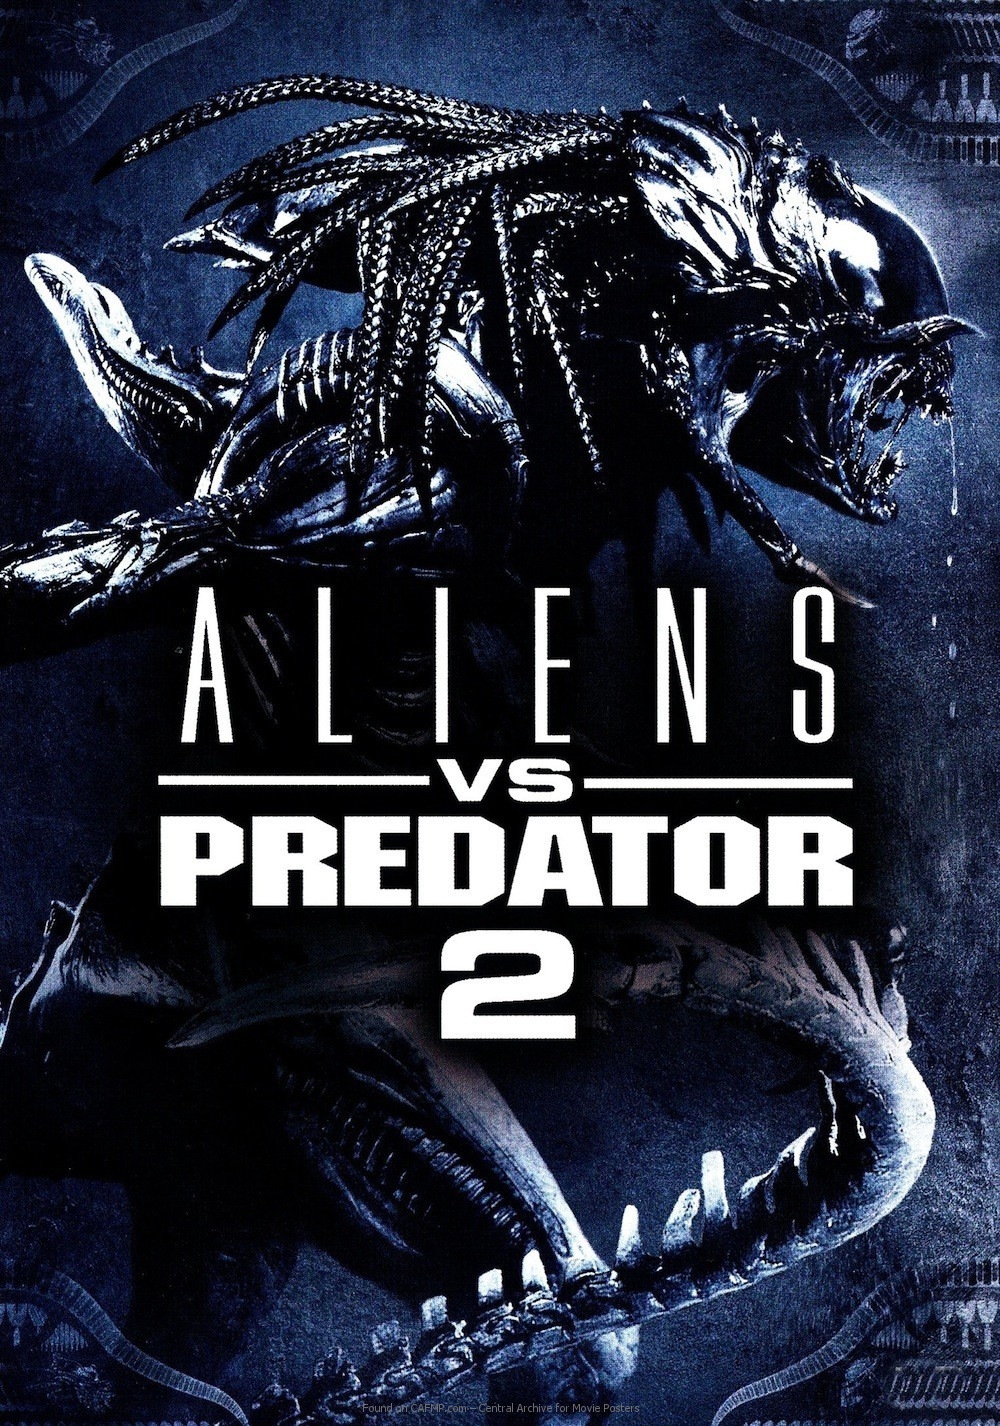 download 2004 alien vs predator